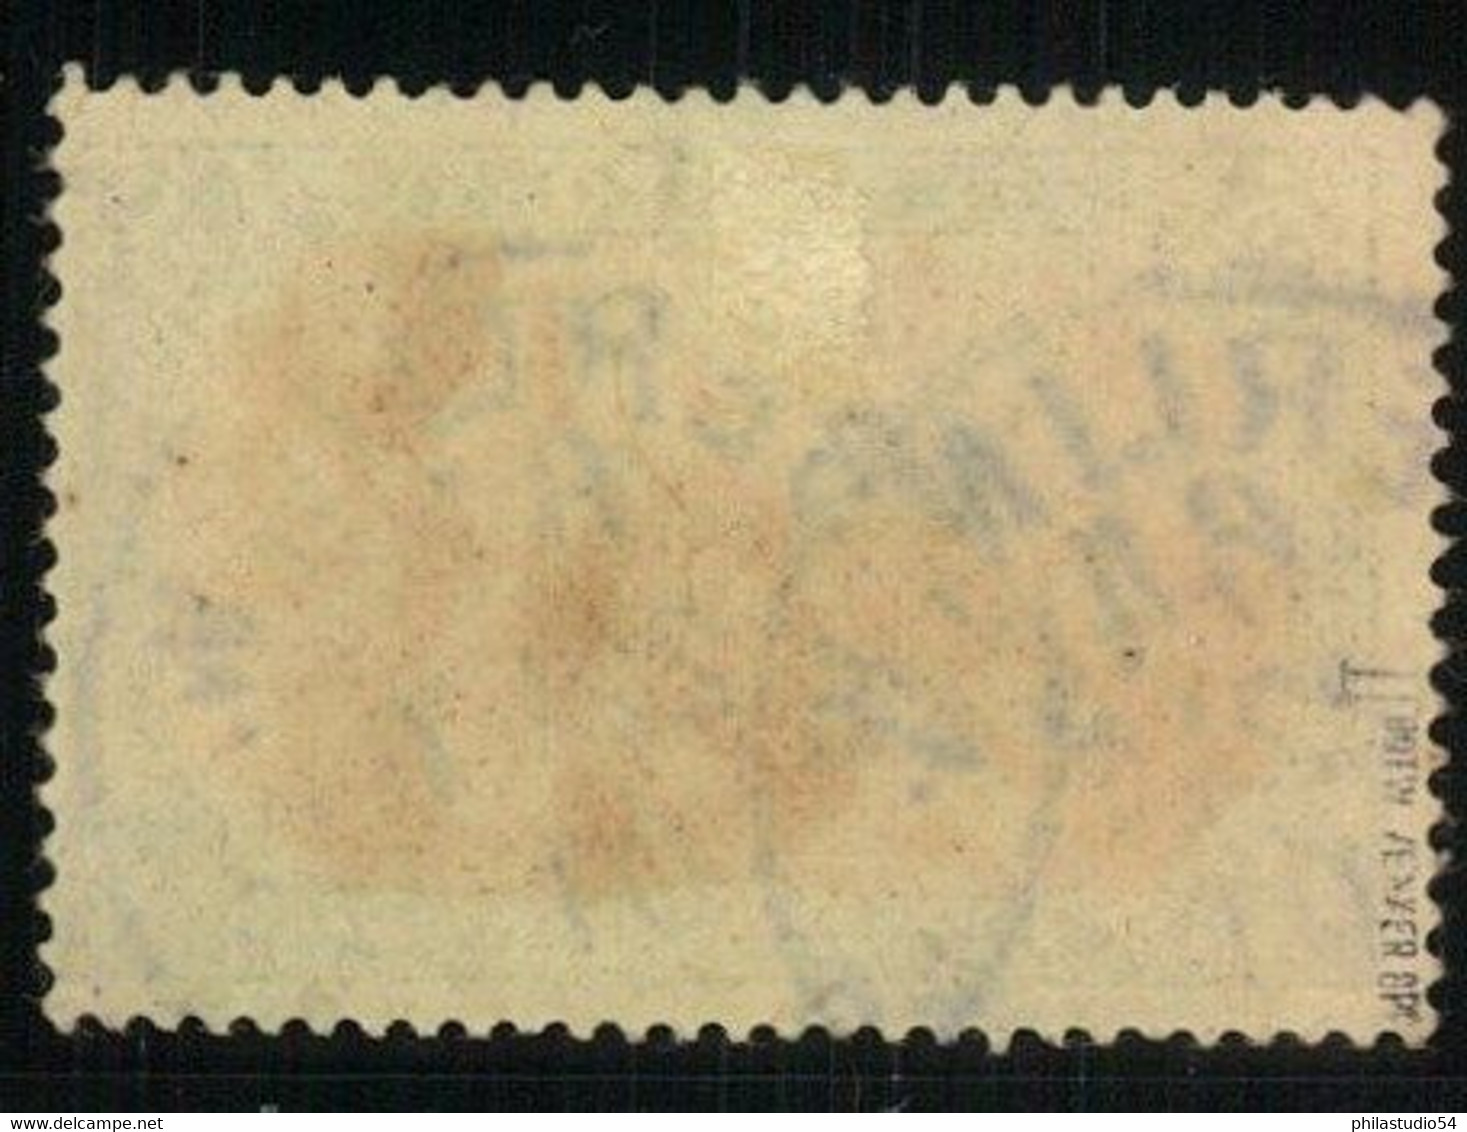 1900: 5 Mark Reichspost, Michelnummer 66 II (500,-), Geprüft - Usados